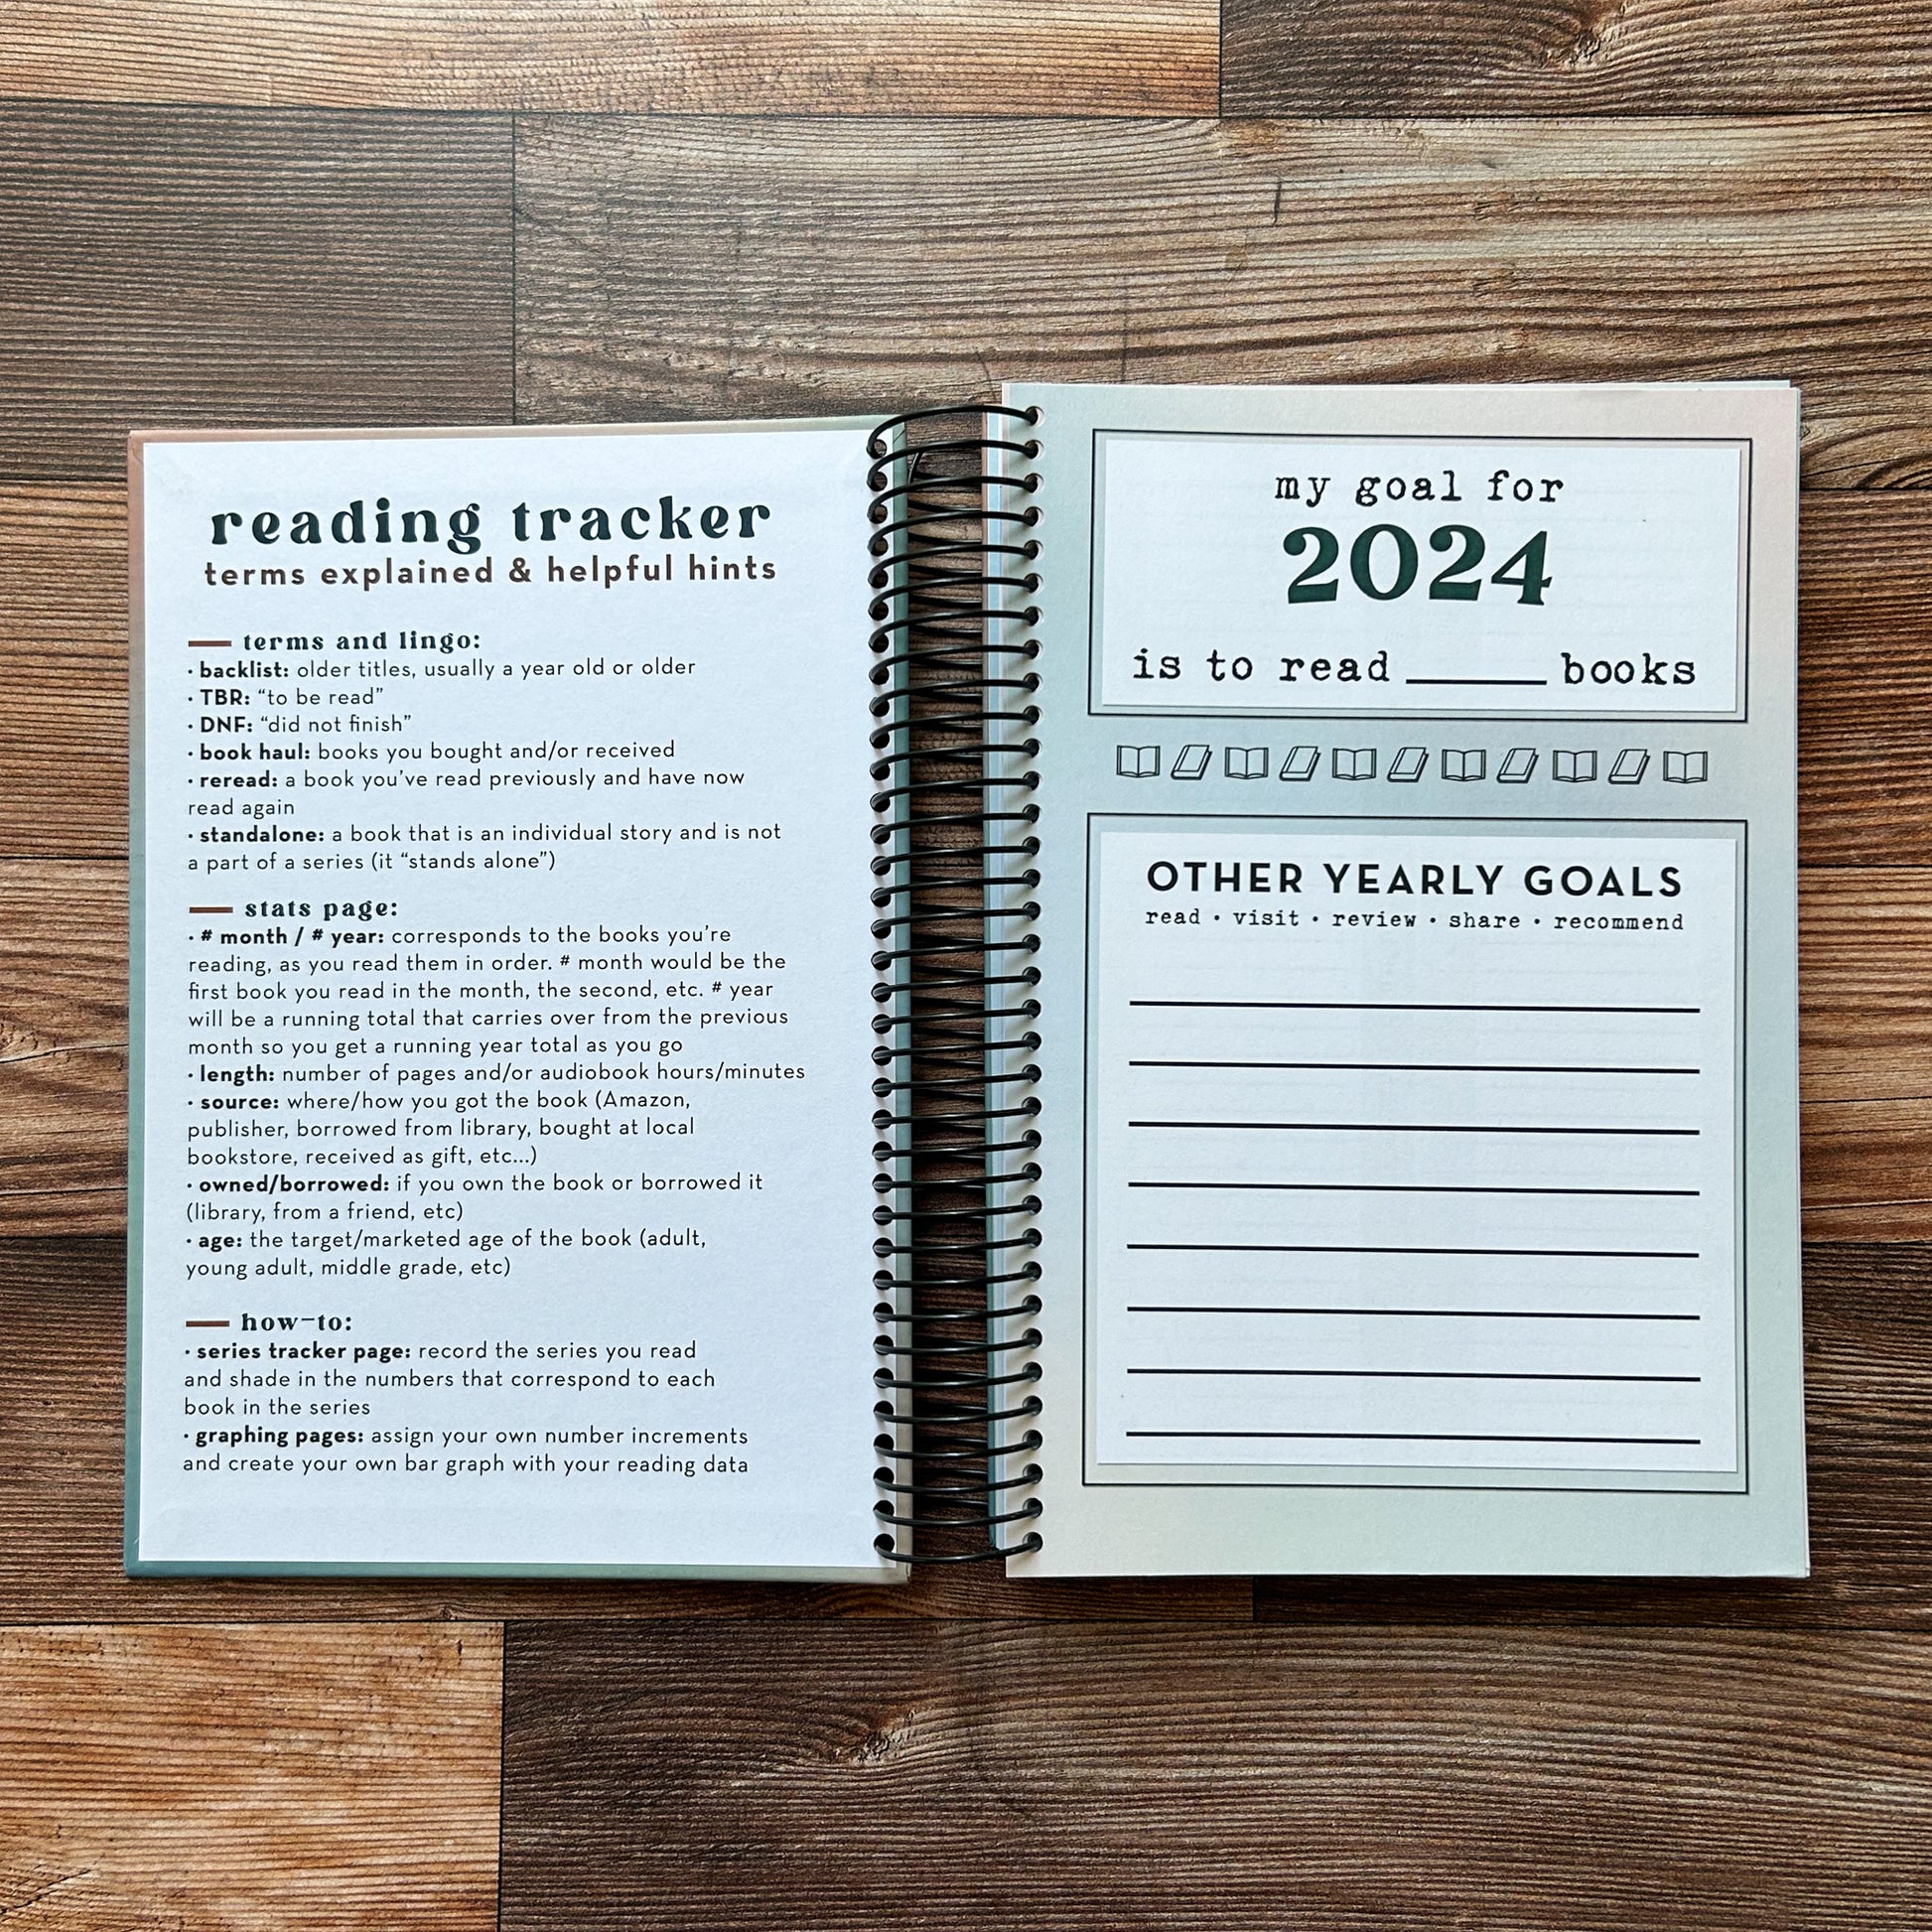 2024 Reading Tracker